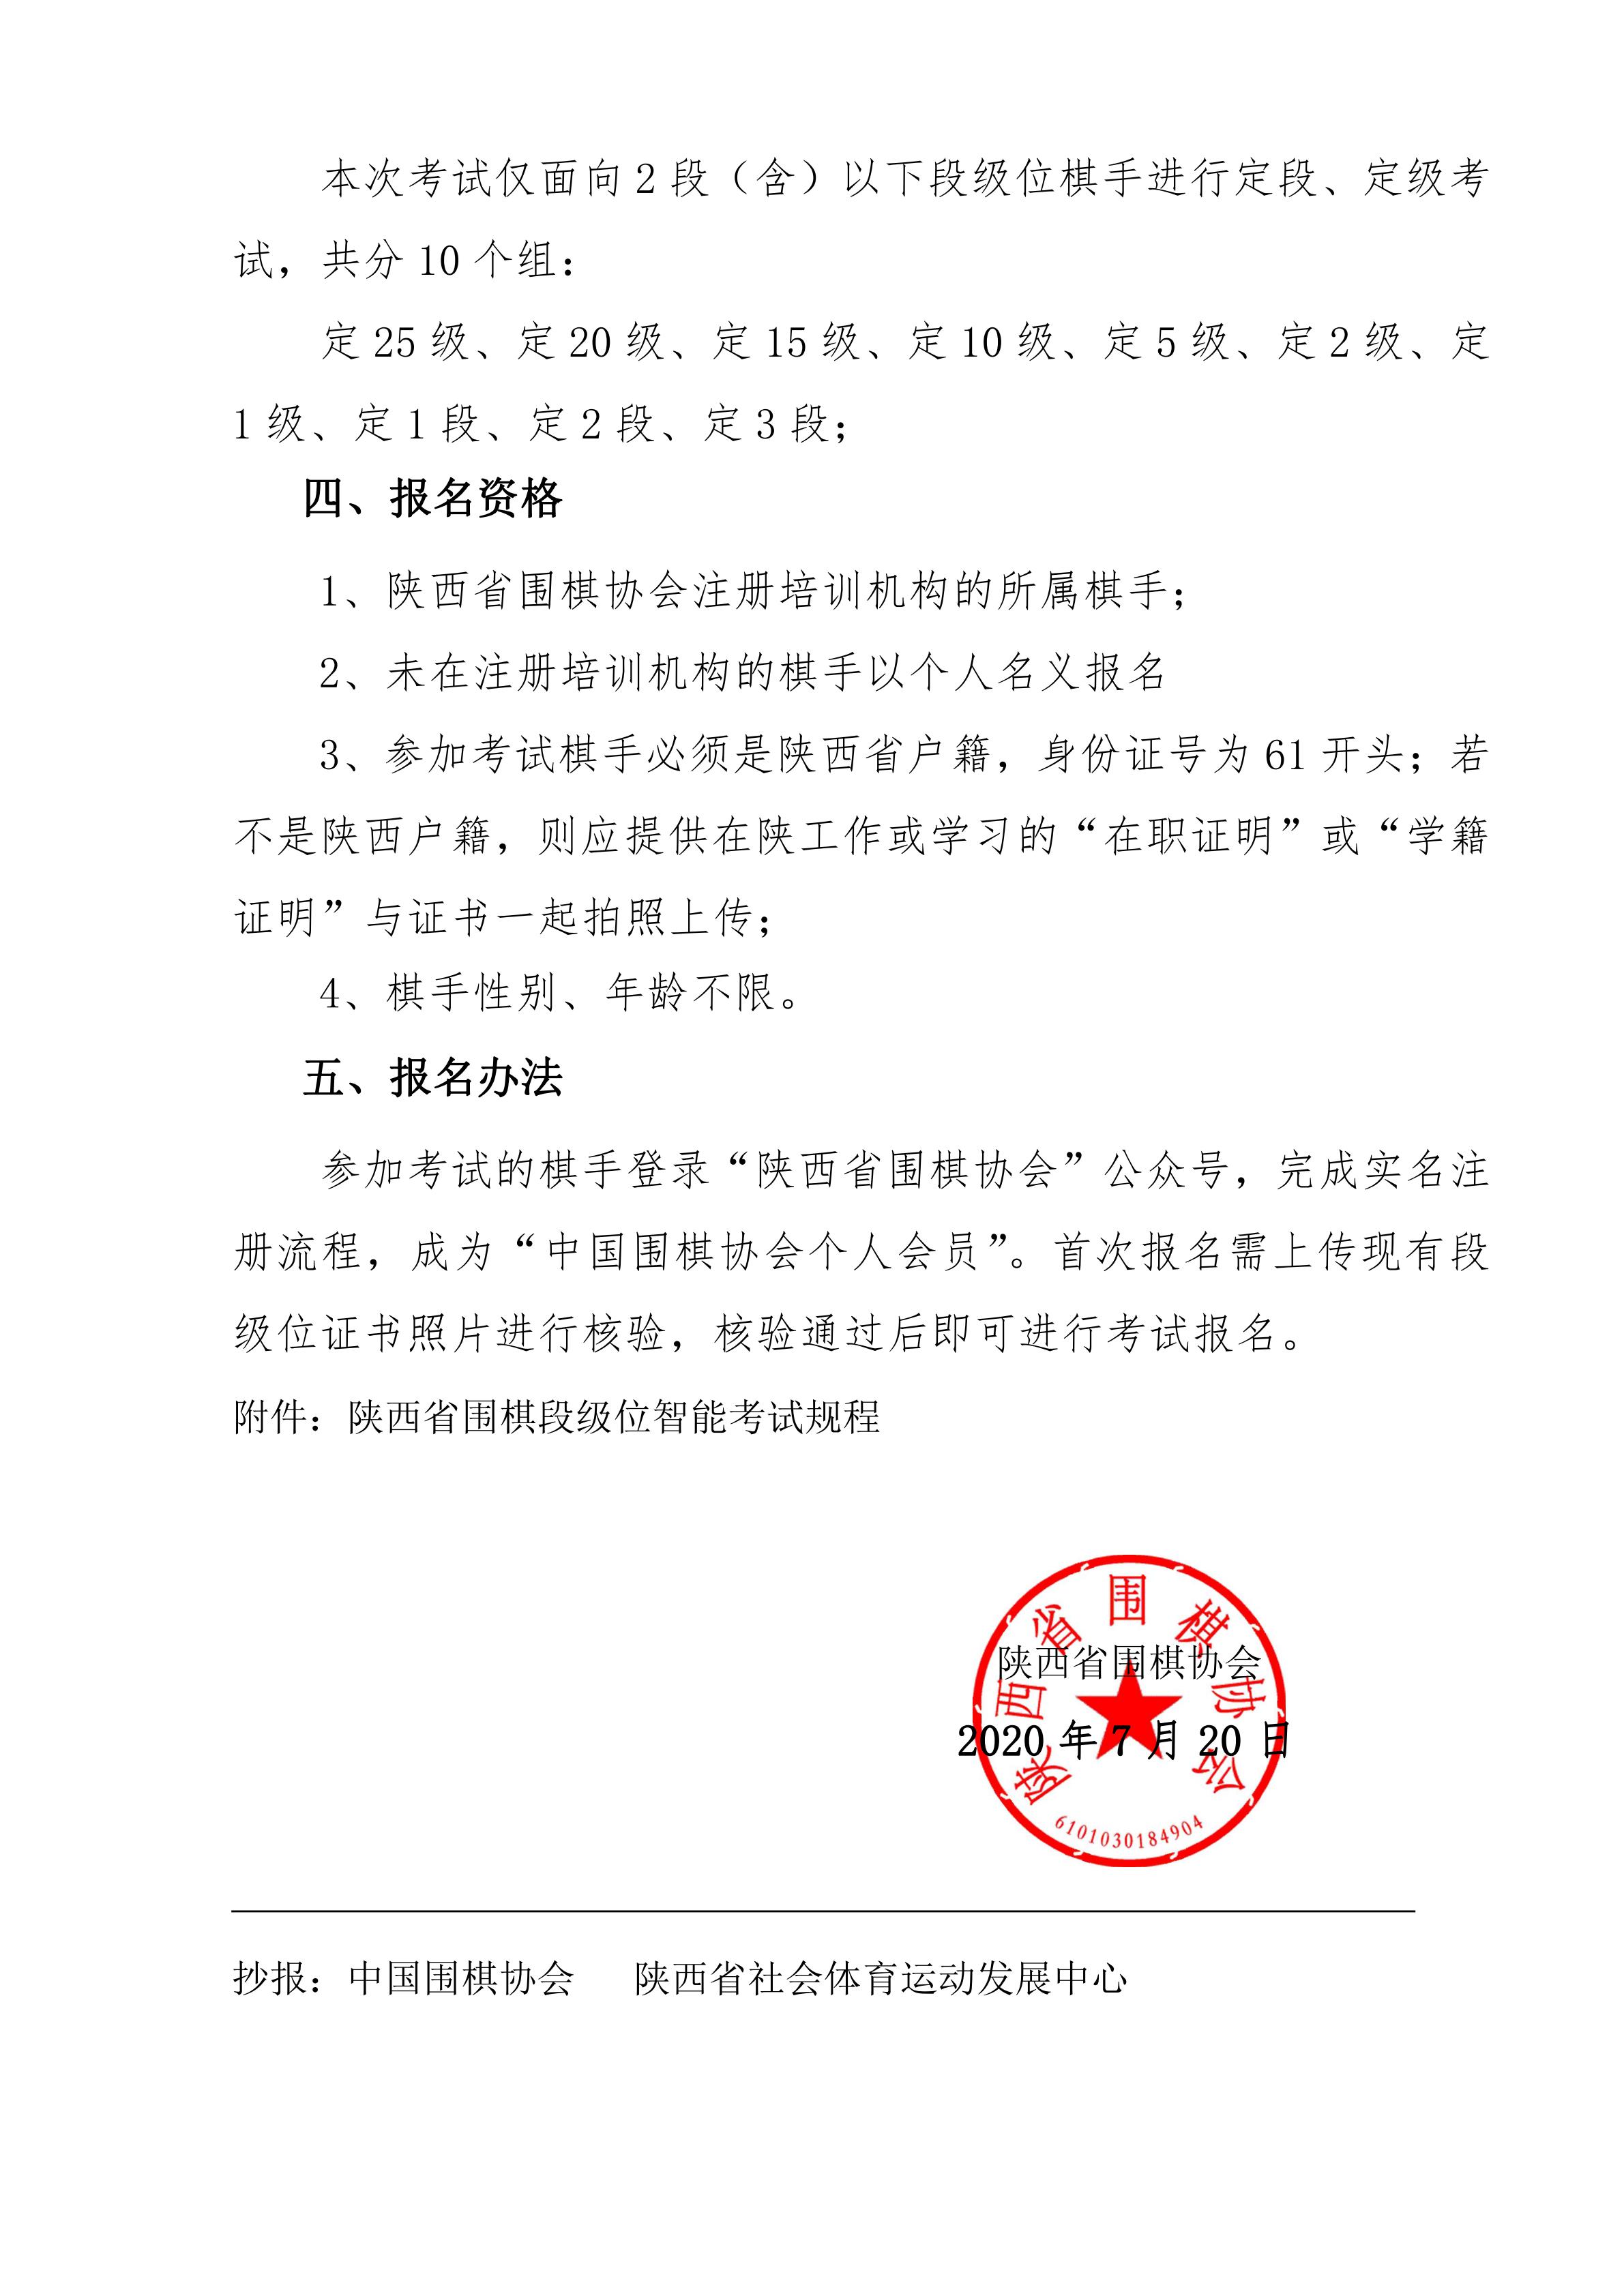 关于举办“陕西省围棋段级位智能考试”的通知0720_01.jpg